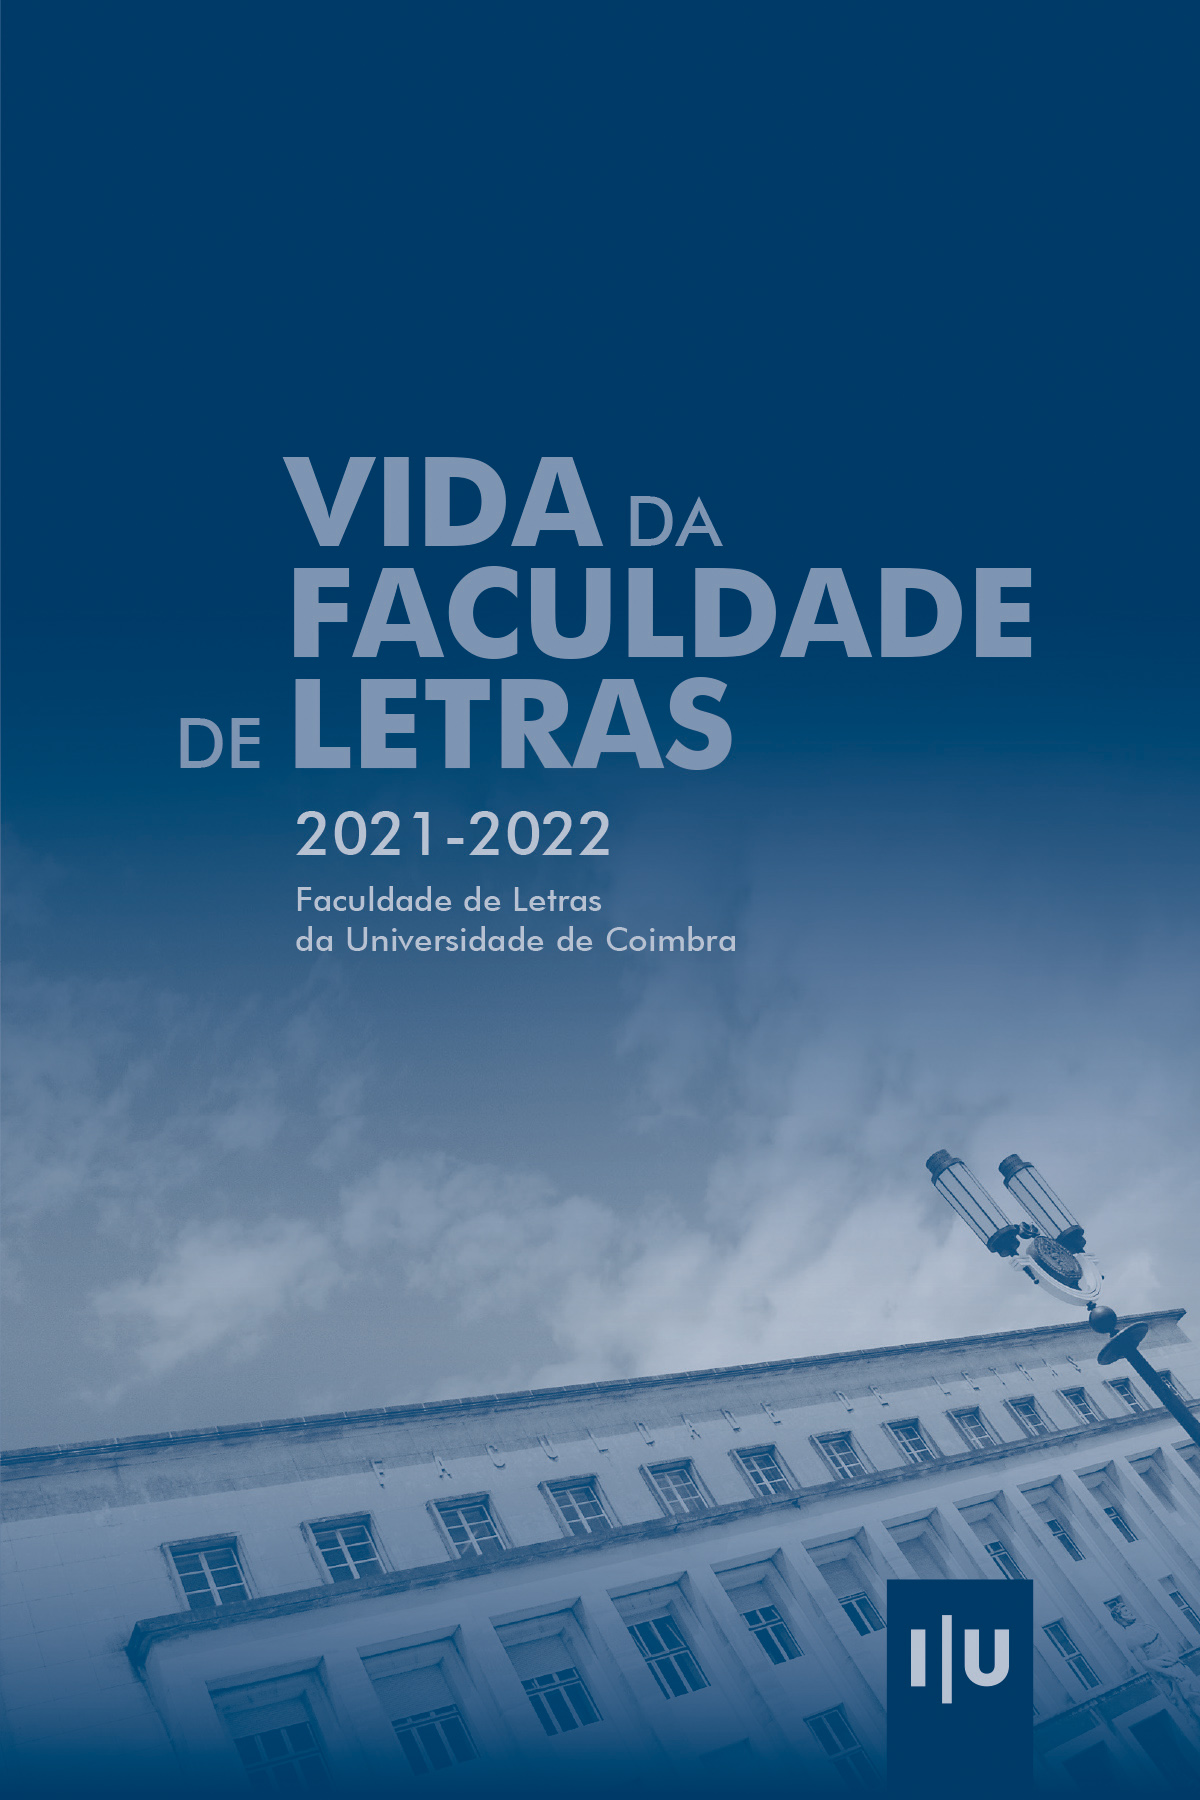 Vida da Faculdade de Letras 2021-2022